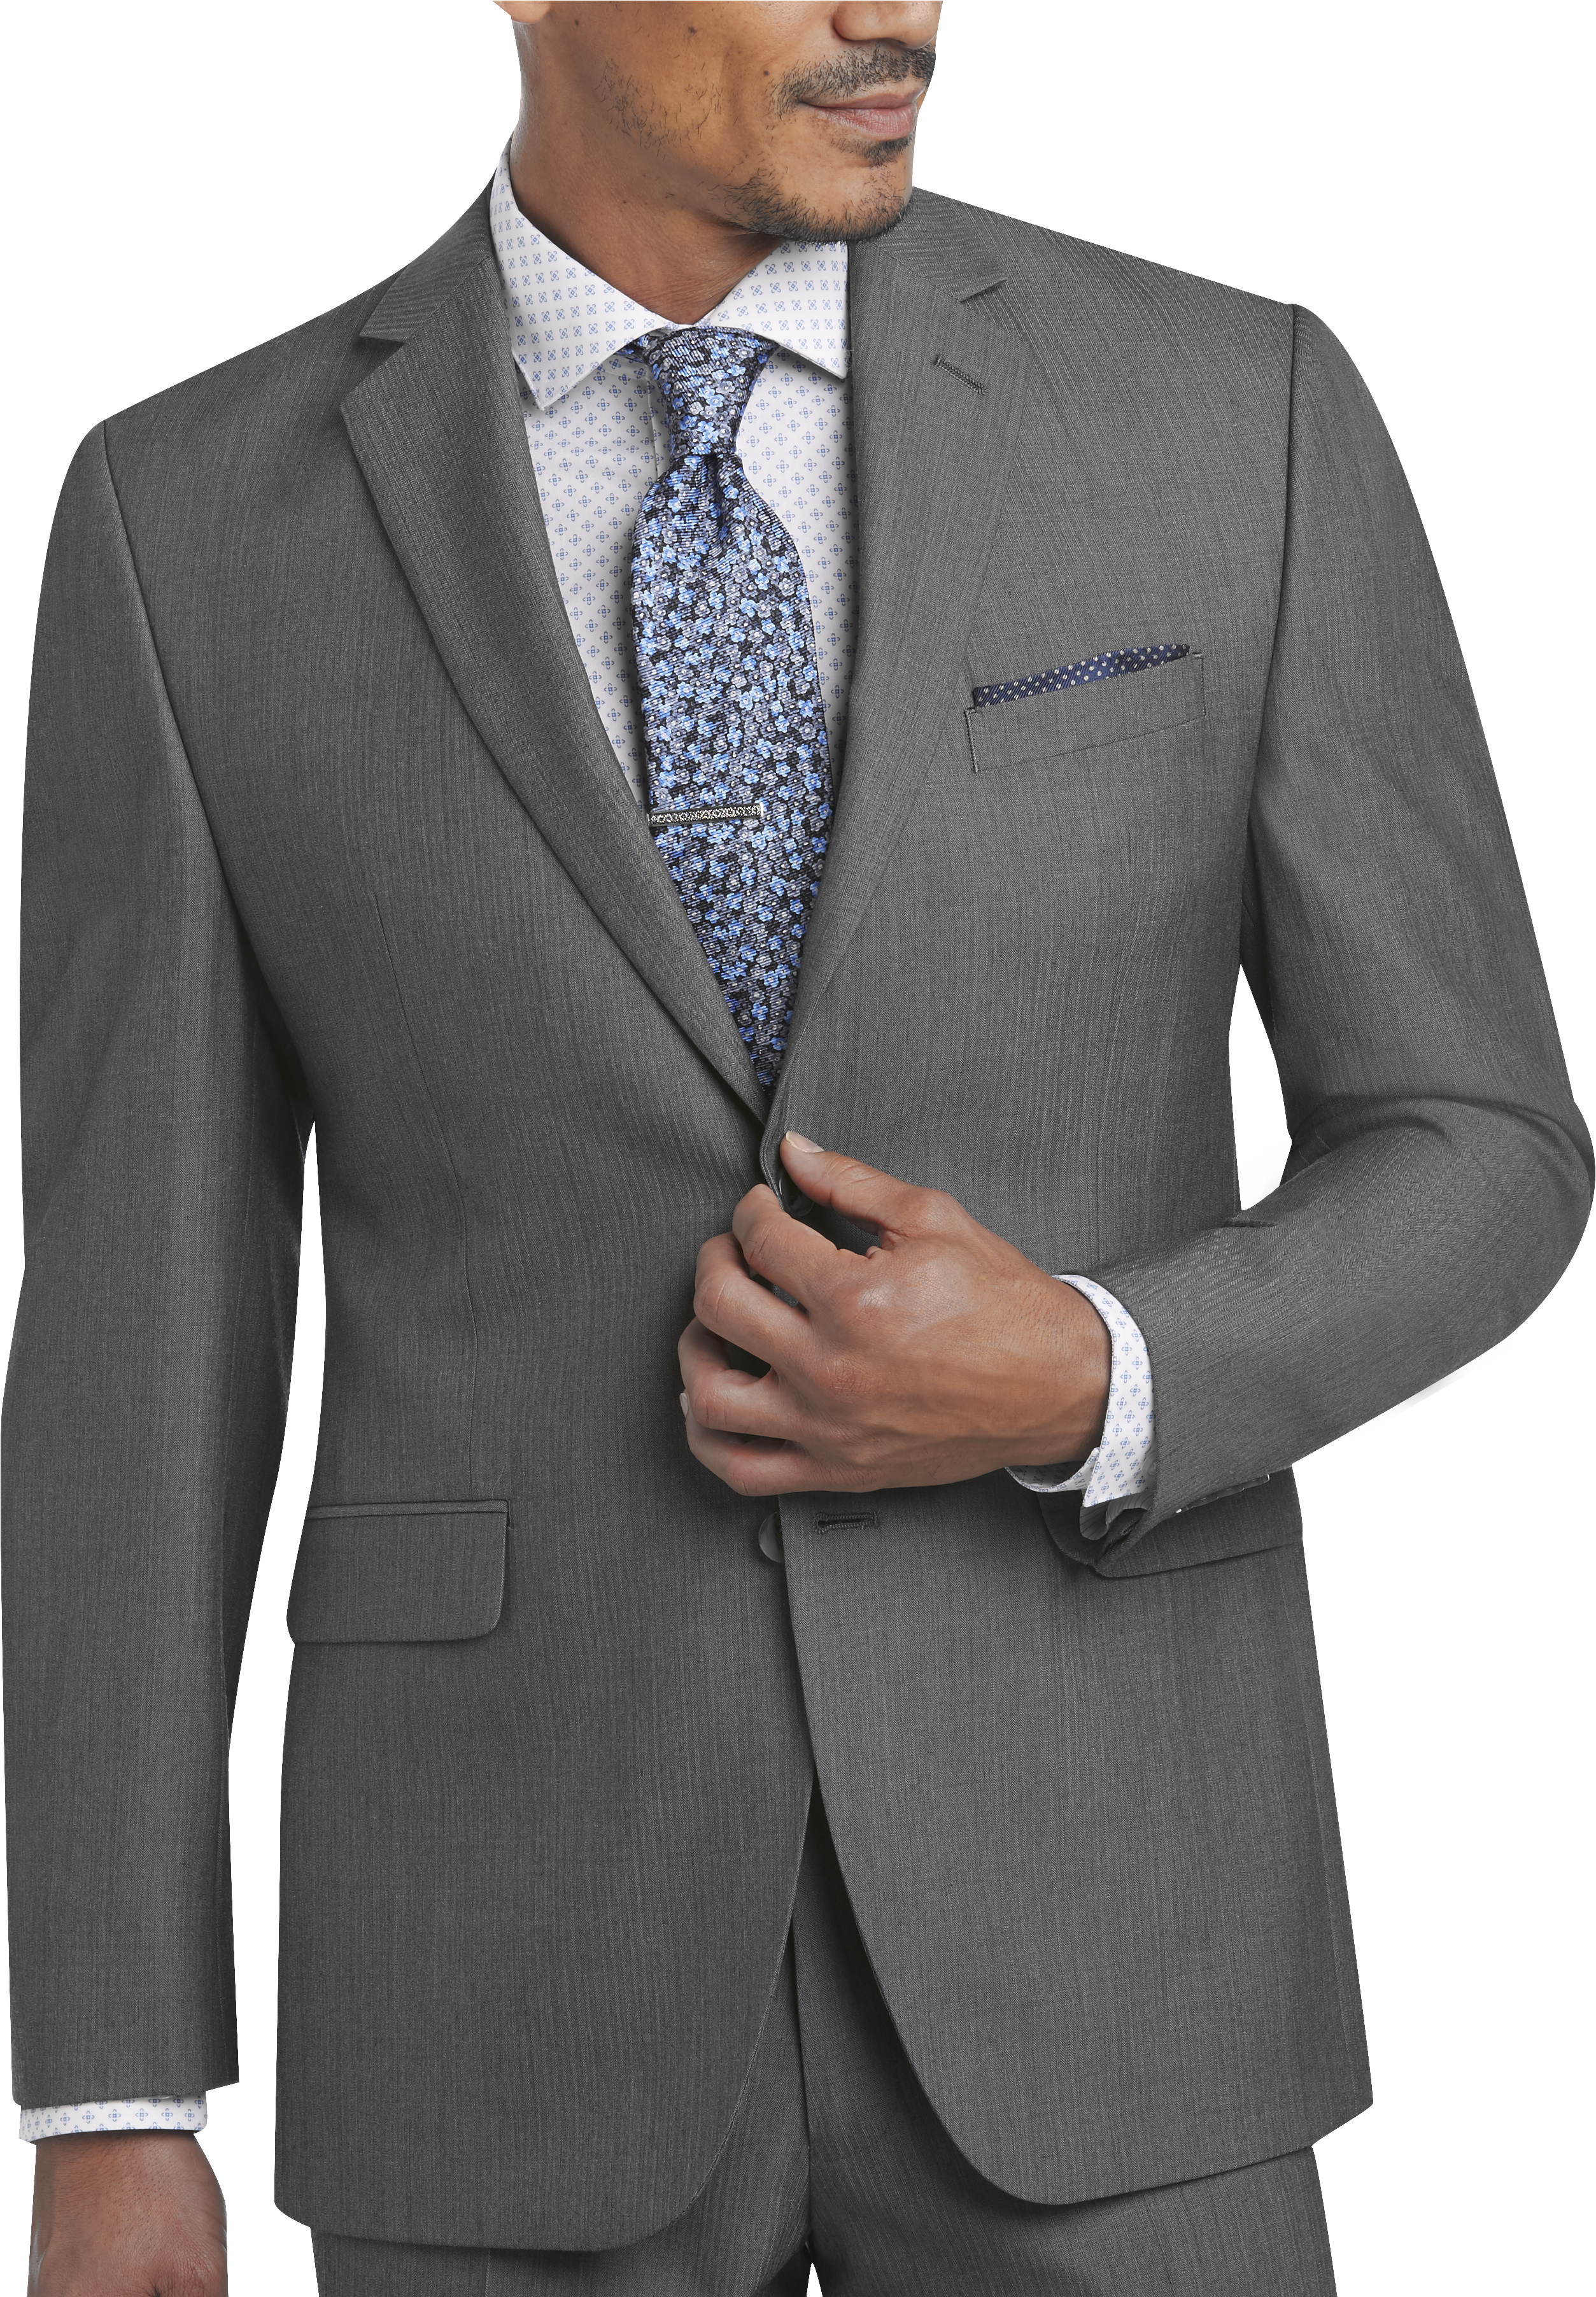 Perry Ellis Portfolio Gray Herringbone Slim Fit Suit - Men's Slim Fit ...